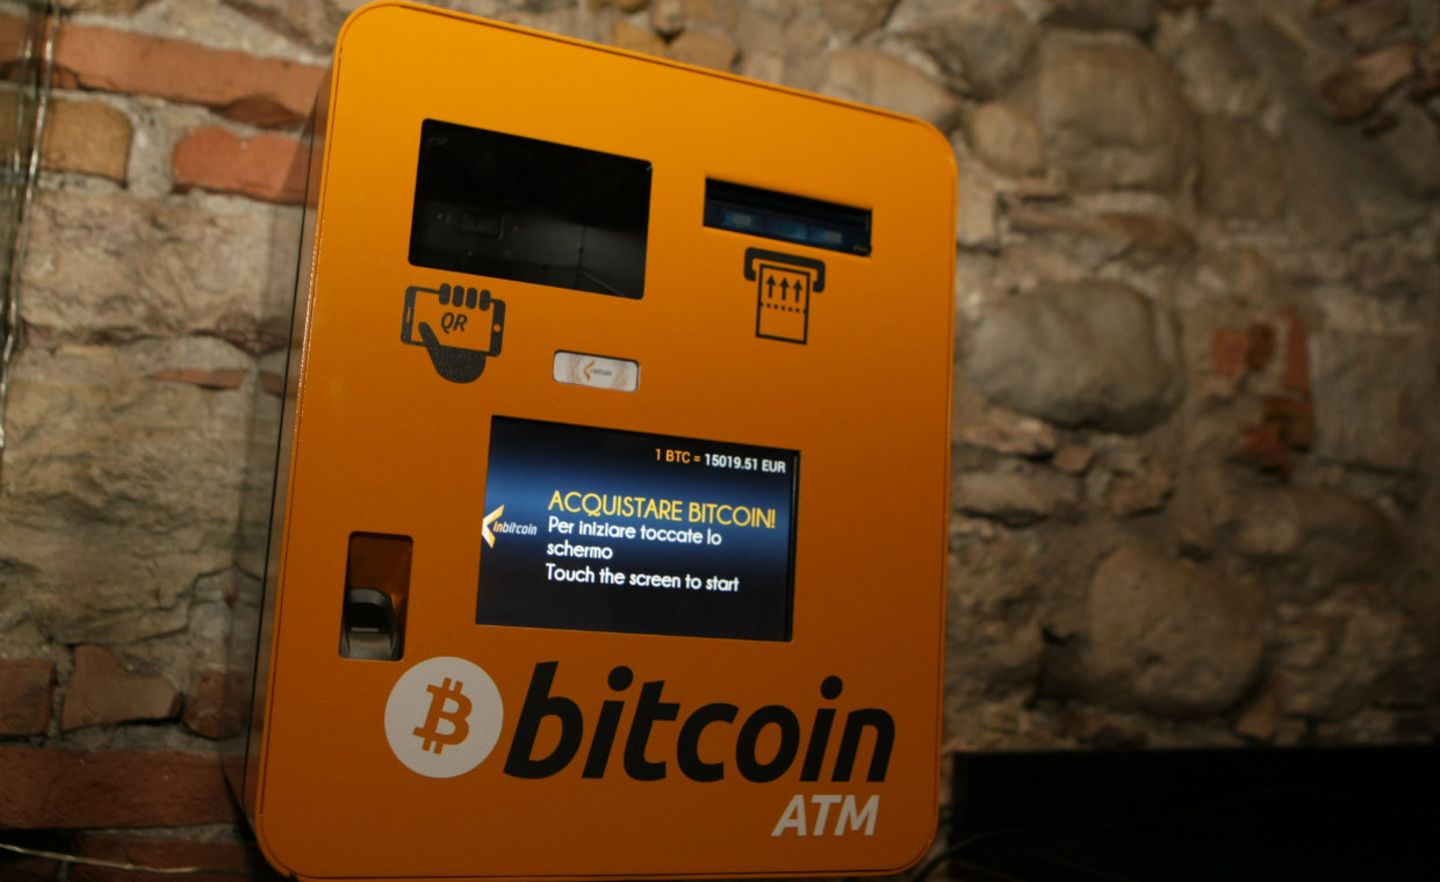 Bitcoin ATM in Italien: Hier kann man Bitcoins in Bargeld tauschen